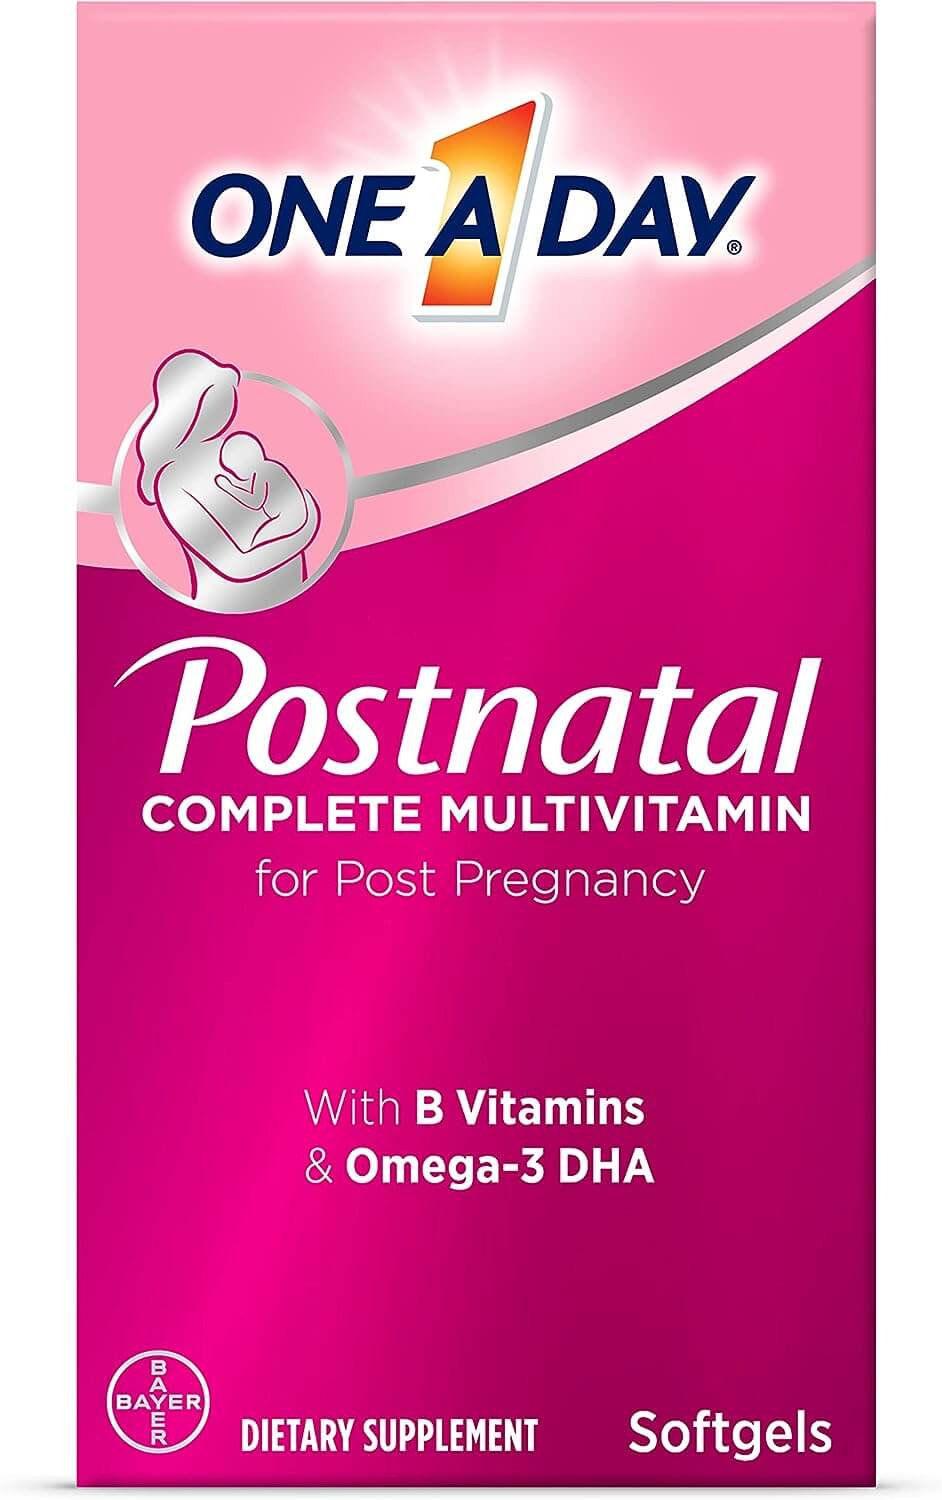 цена Комплекс мультивитаминов для послеродового периода One-A-Day Postnatal Complete Multivitamin for Post-Pregnancy, 60 капс